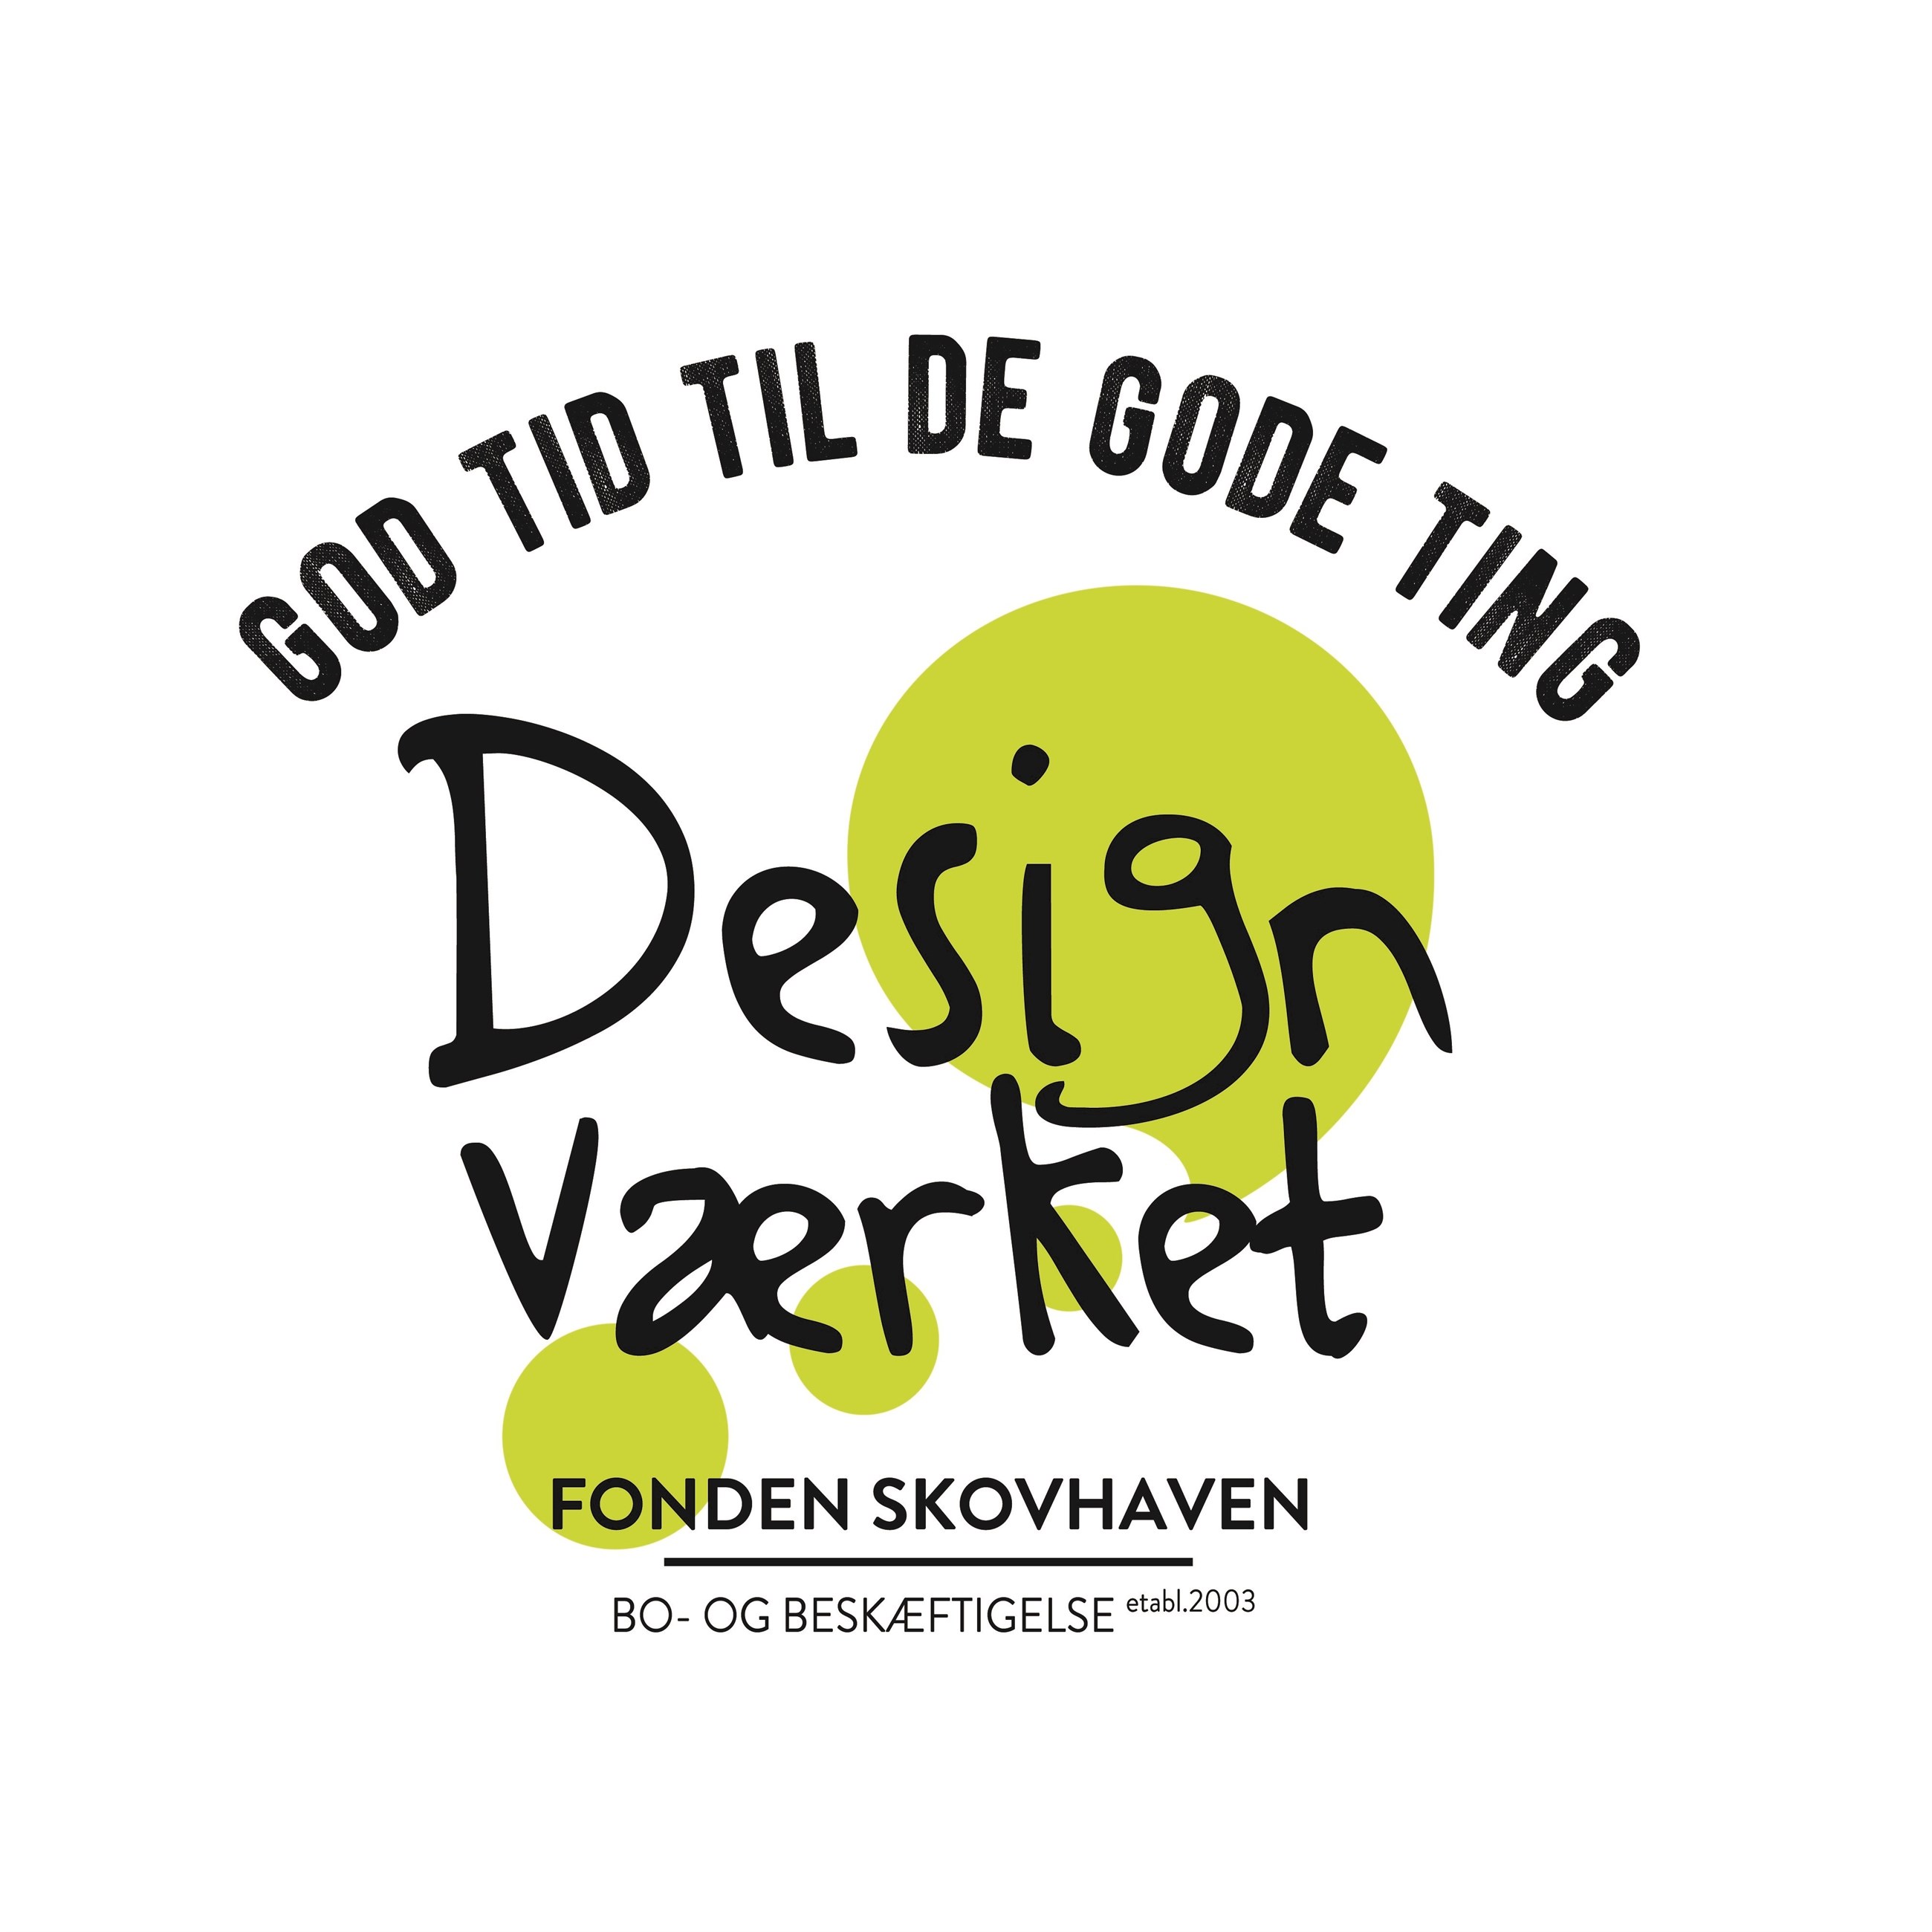 skovhaven_designværket_logo